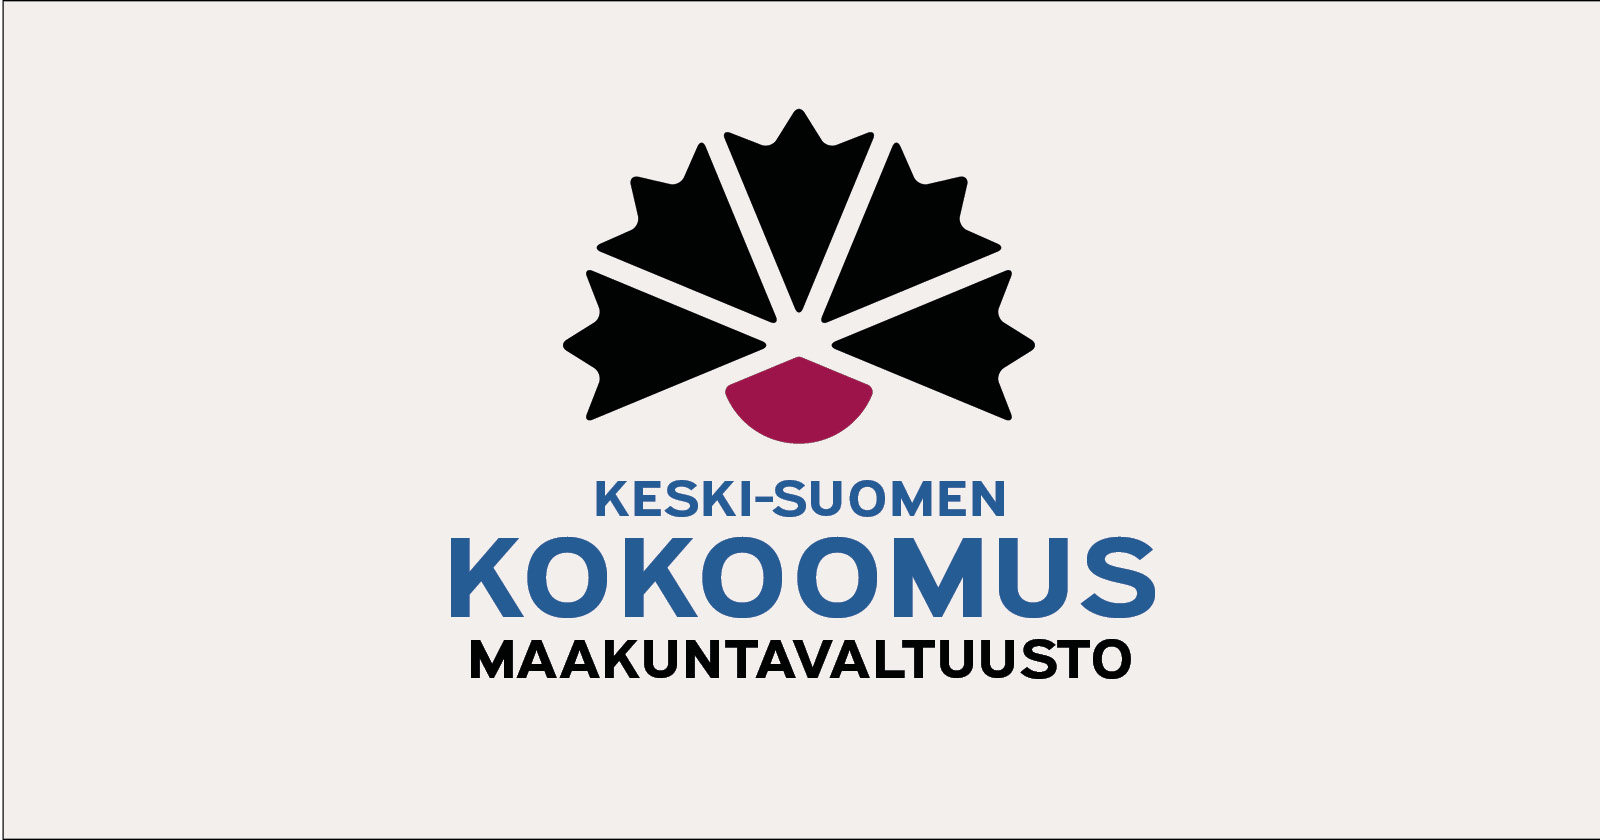 Keski-Suomen Kokoomus, maakuntavaltuusto